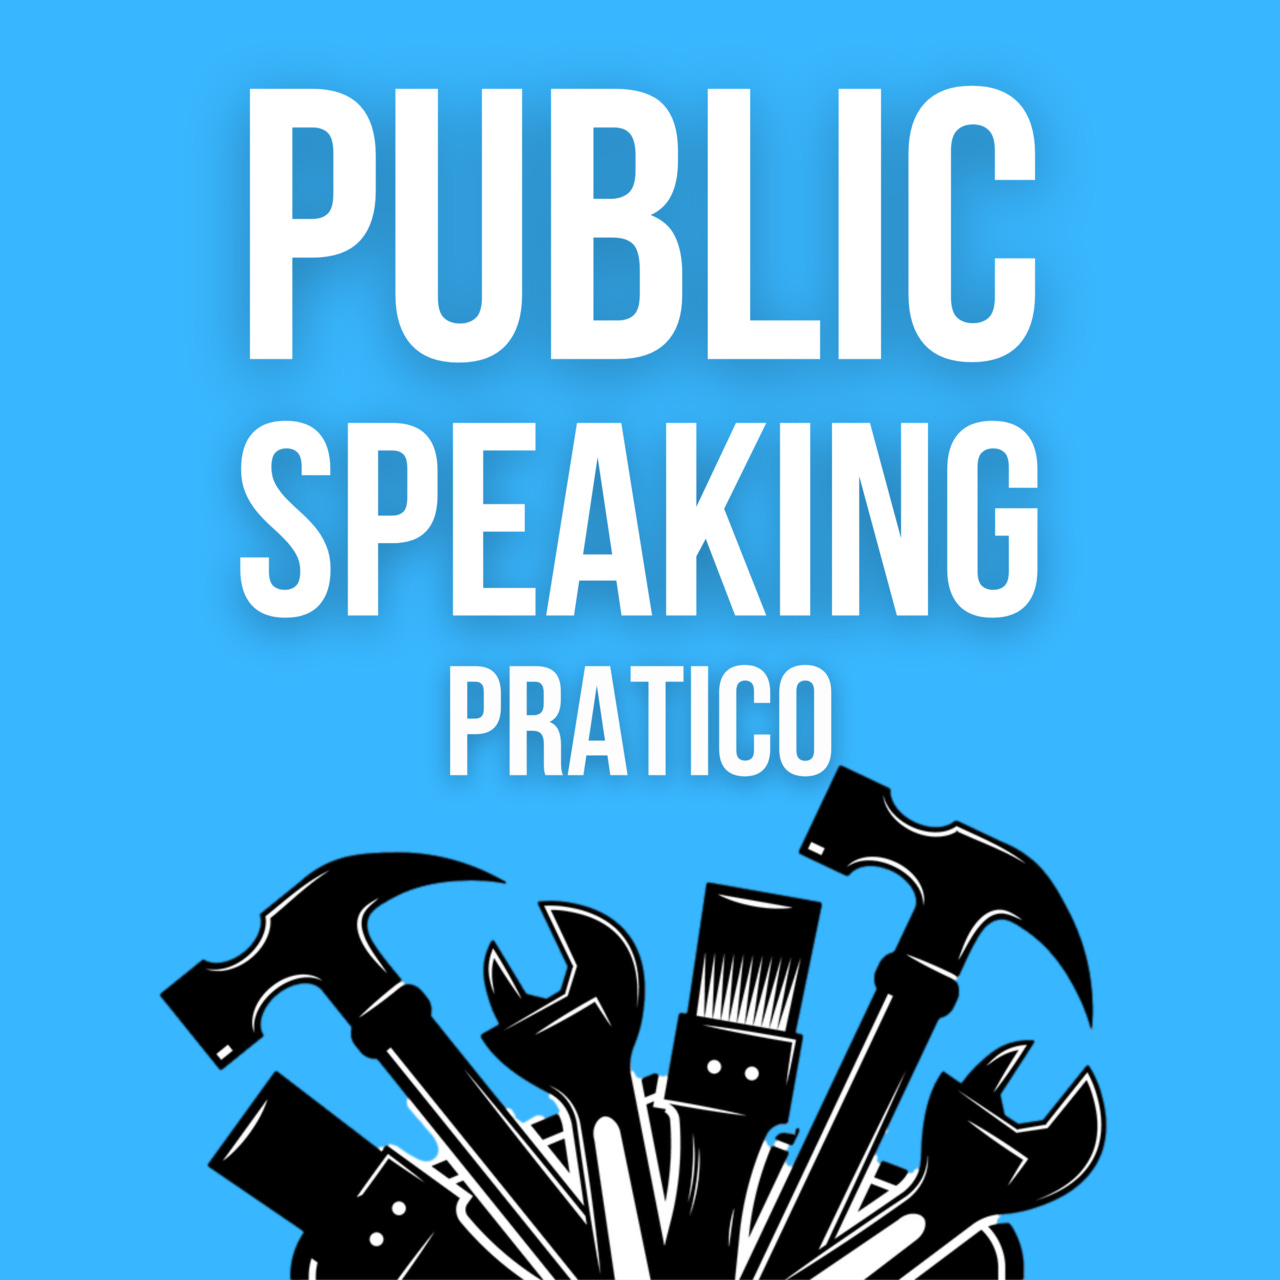 Artwork for Public speaking pratico